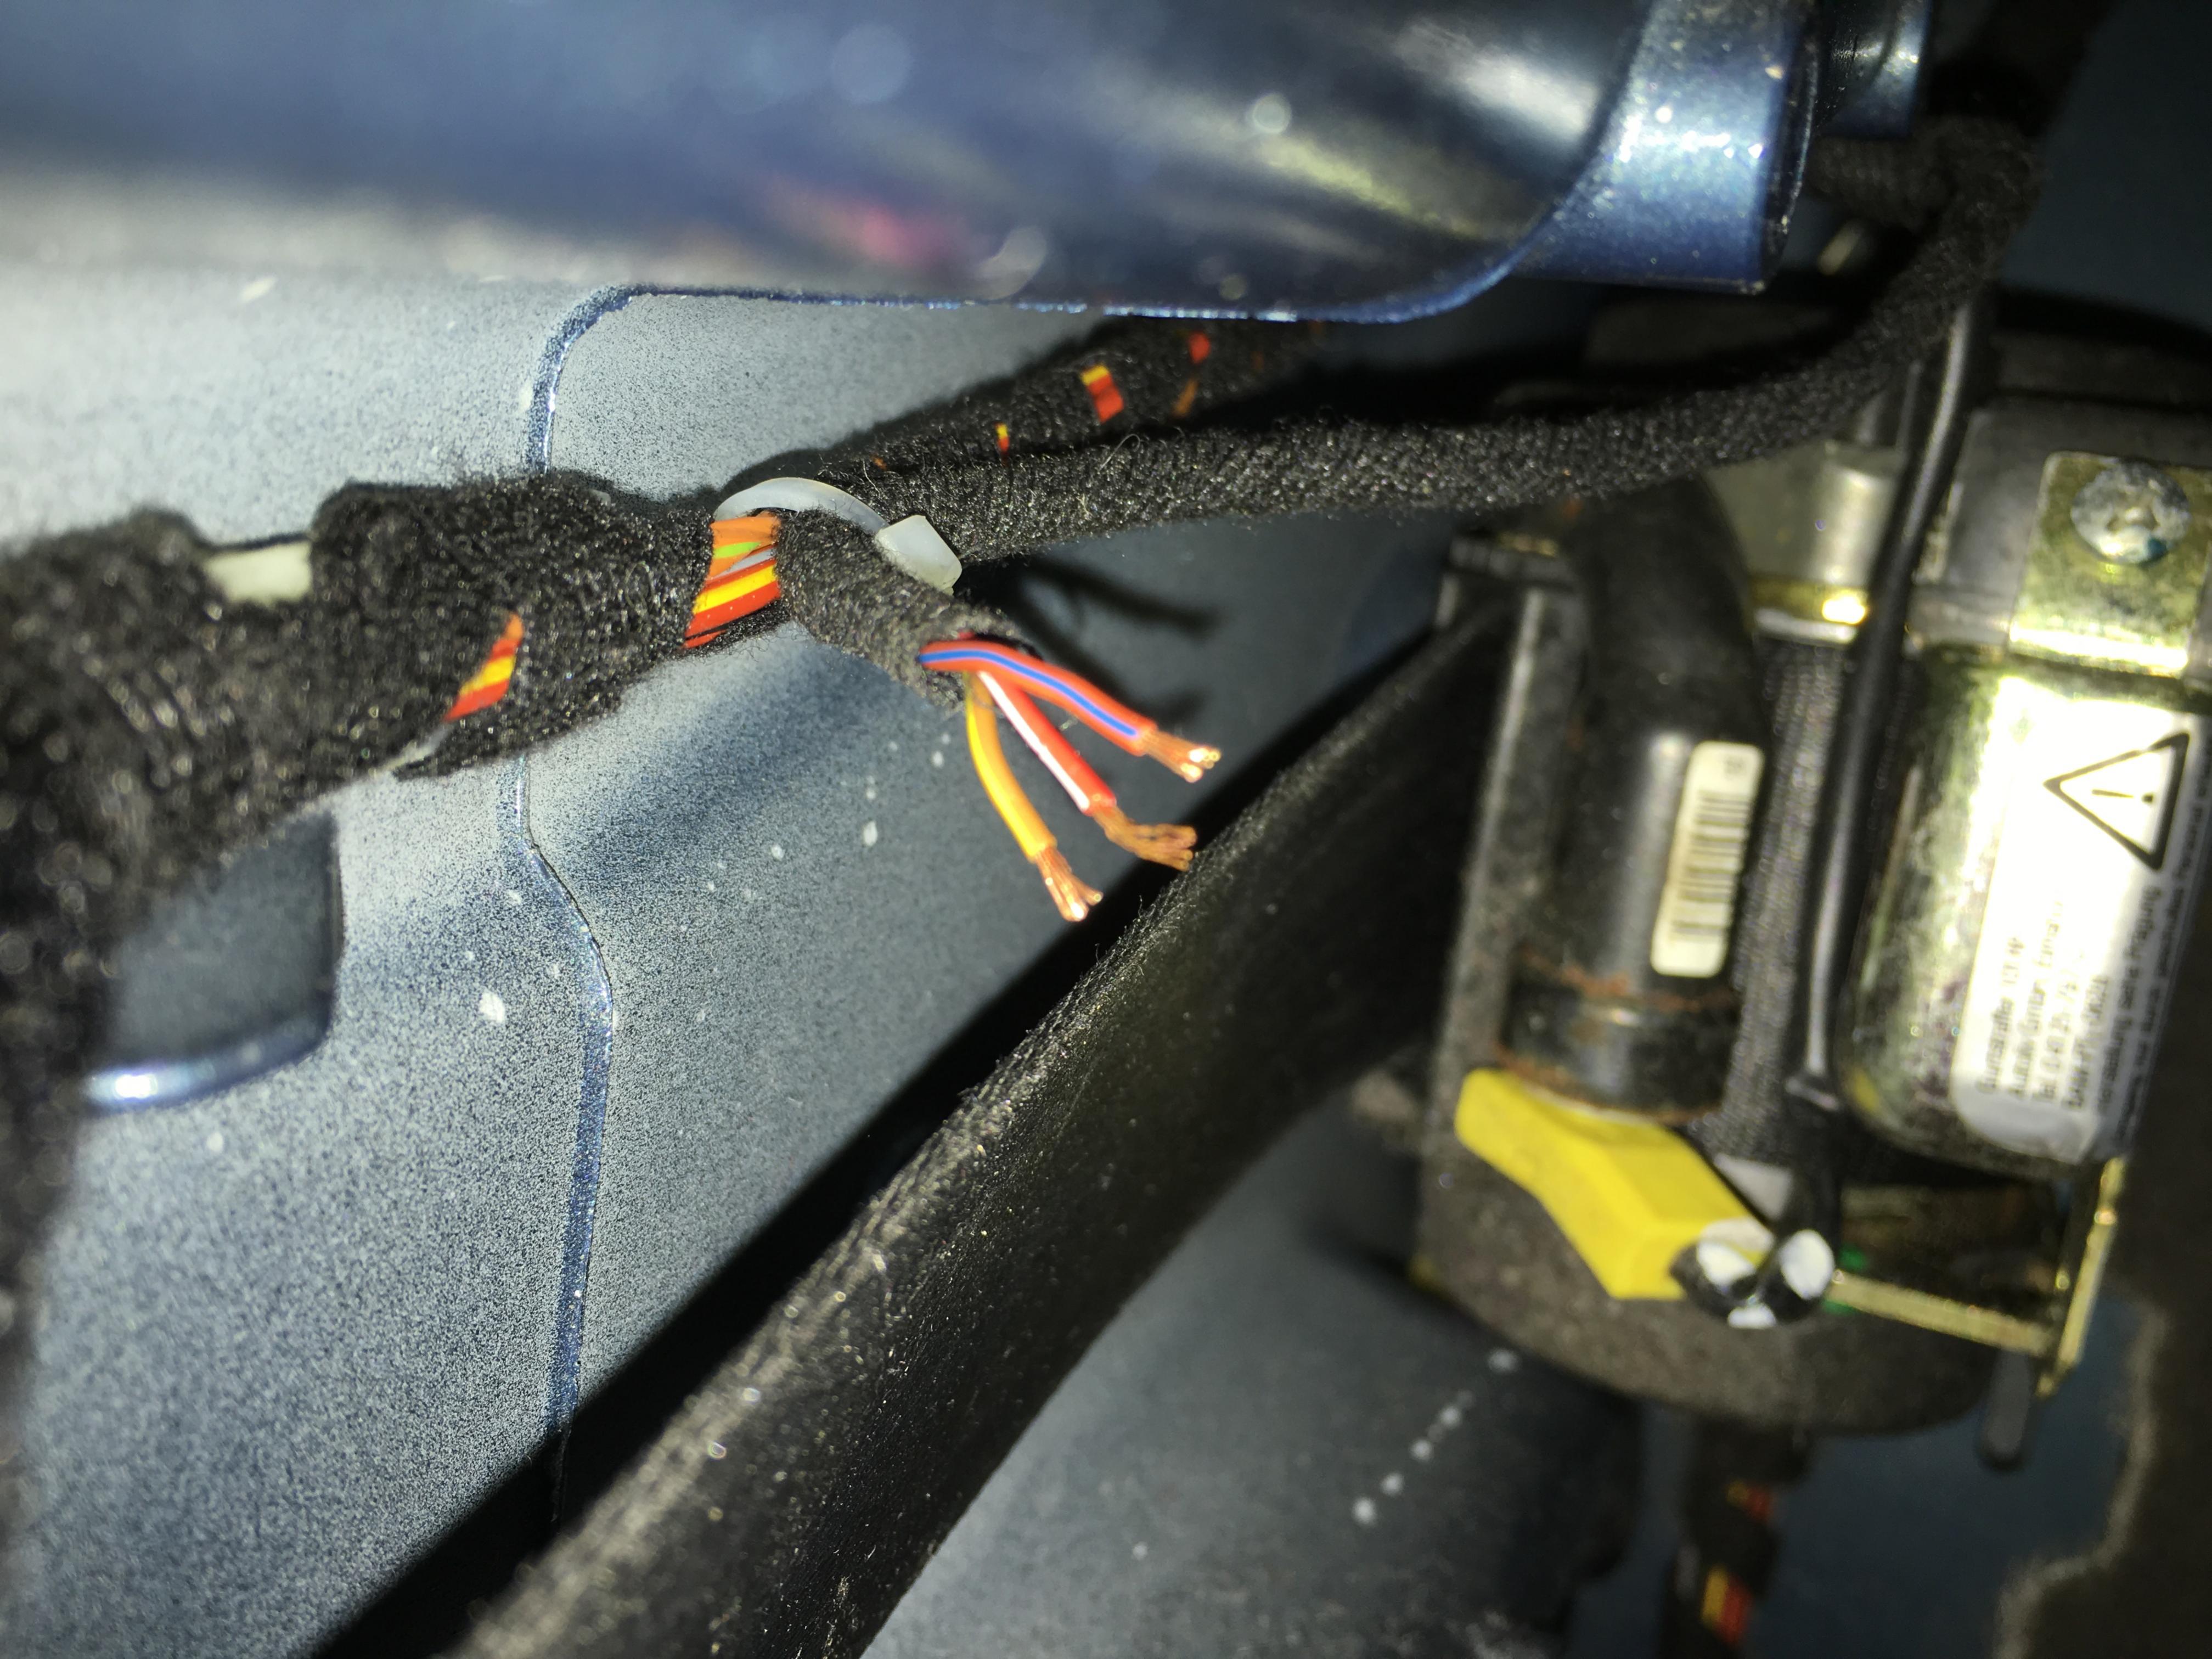 Tankklappe entriegelt nicht über Tankklappenentriegelungs-Schalter